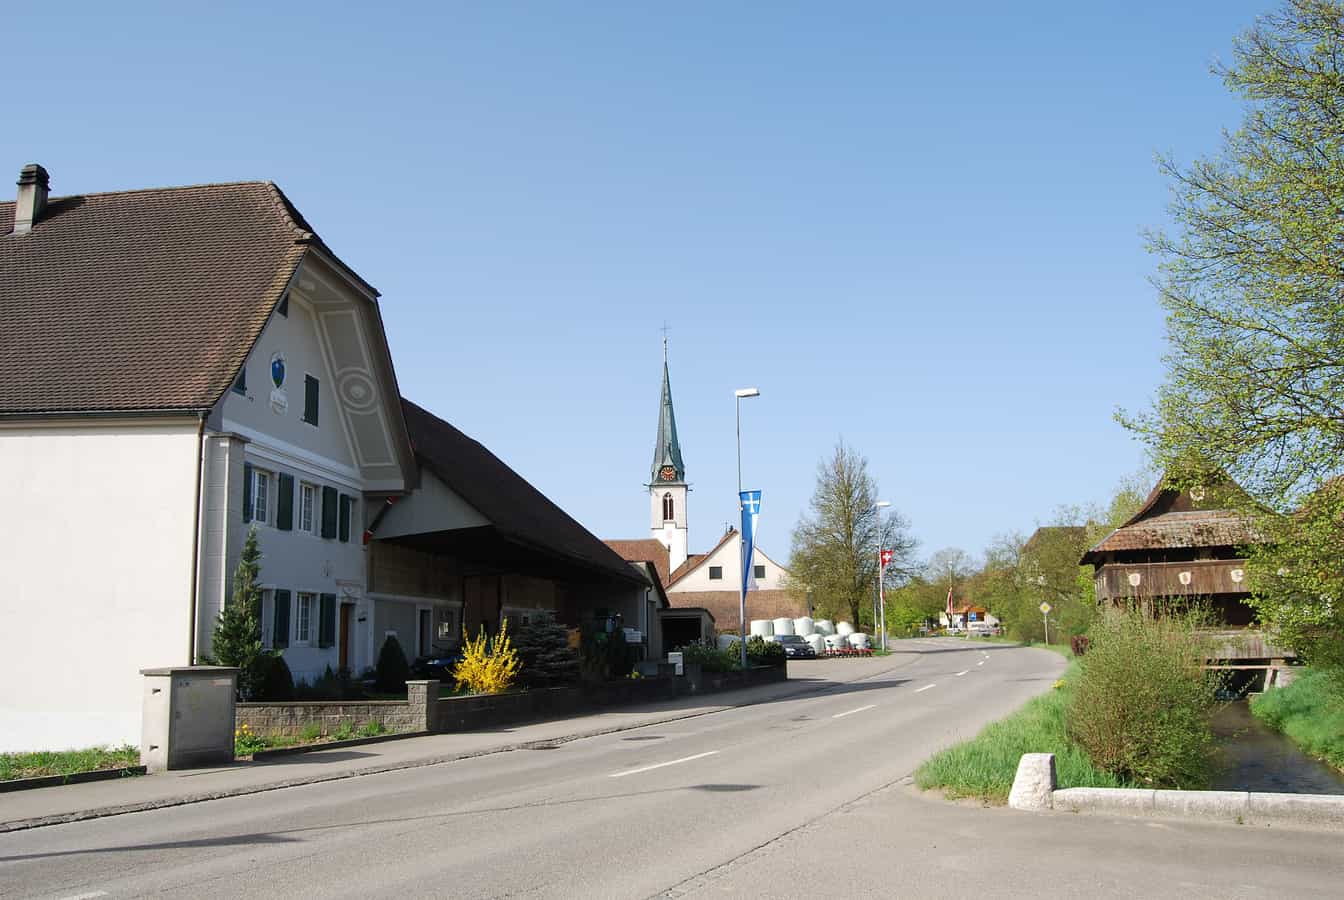 Hauptstrasse mit Blick auf Kirche und Dorfspeicher